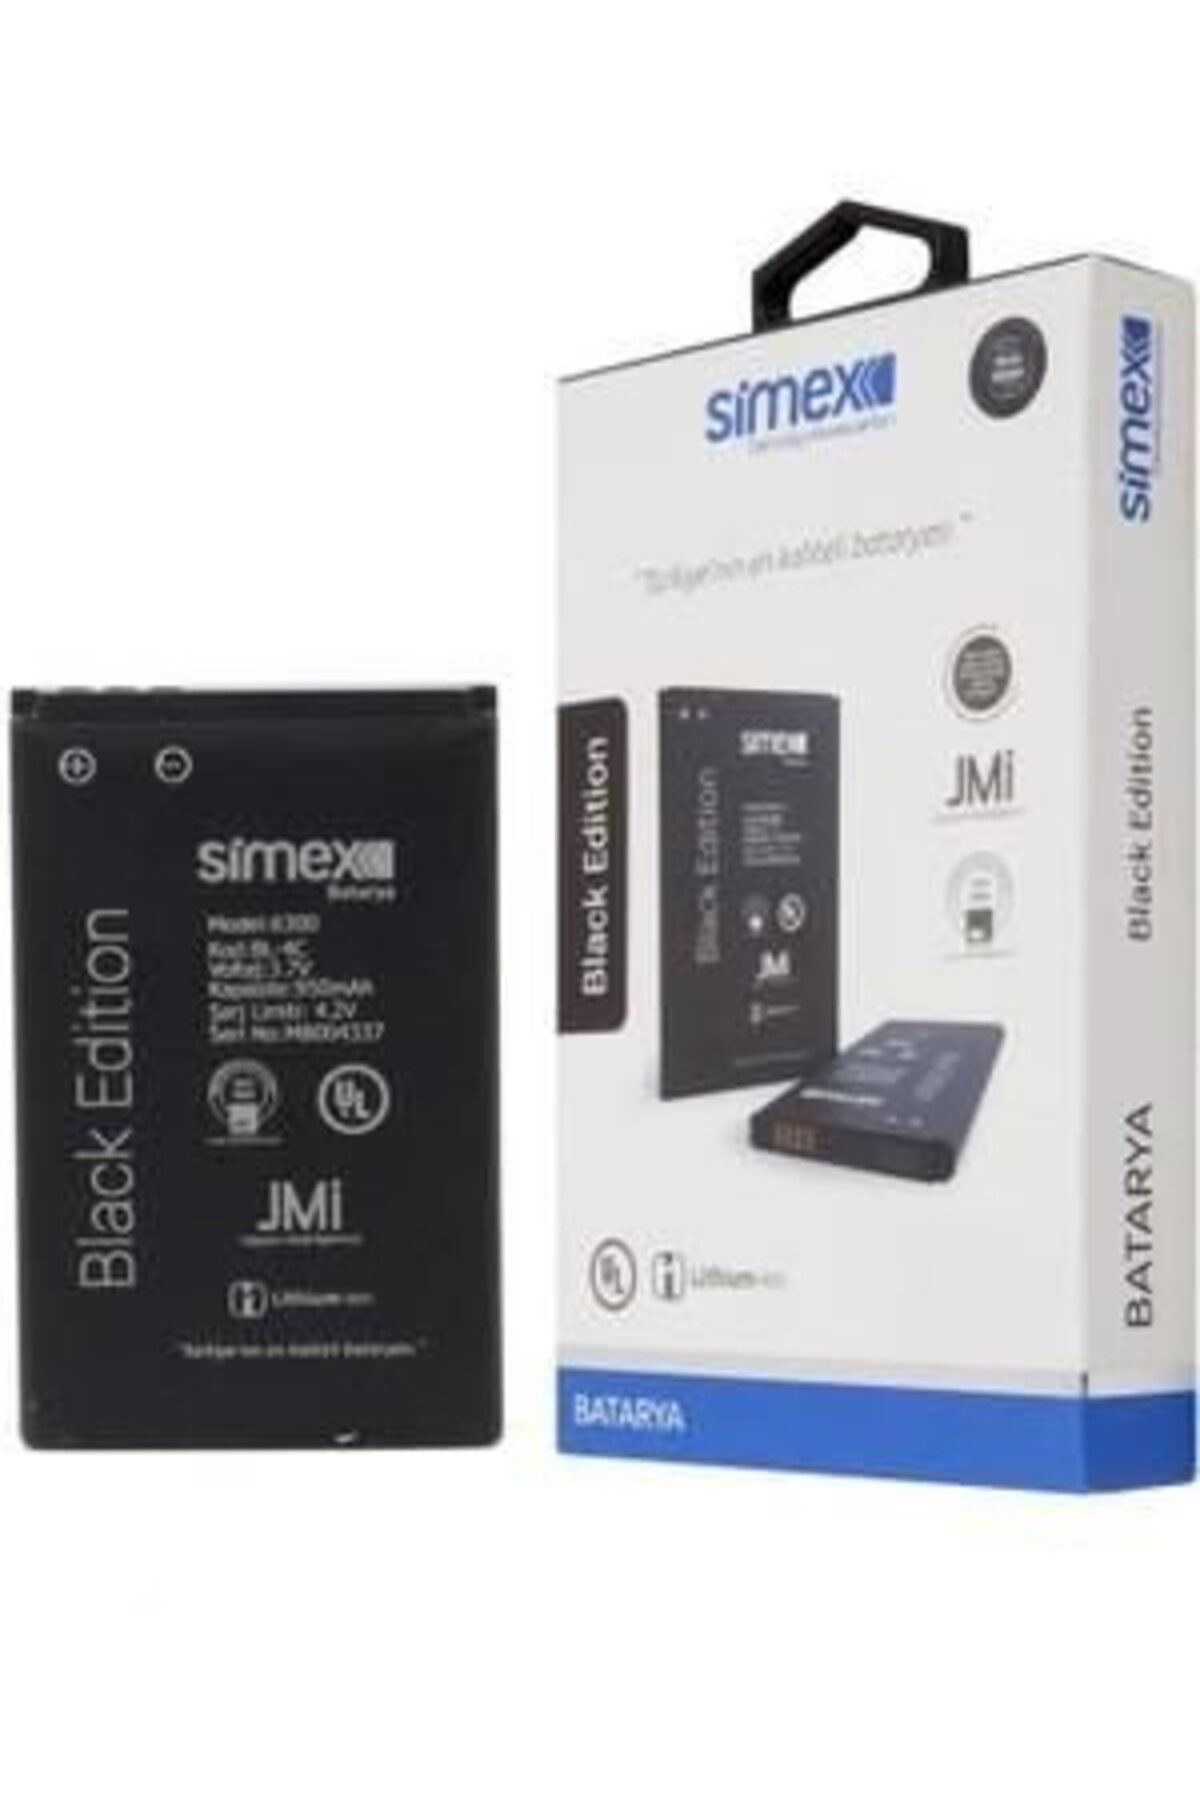 Simex 6300 Ile Uyumlu Sbt-03 Bl-4c Batarya Blue Edition